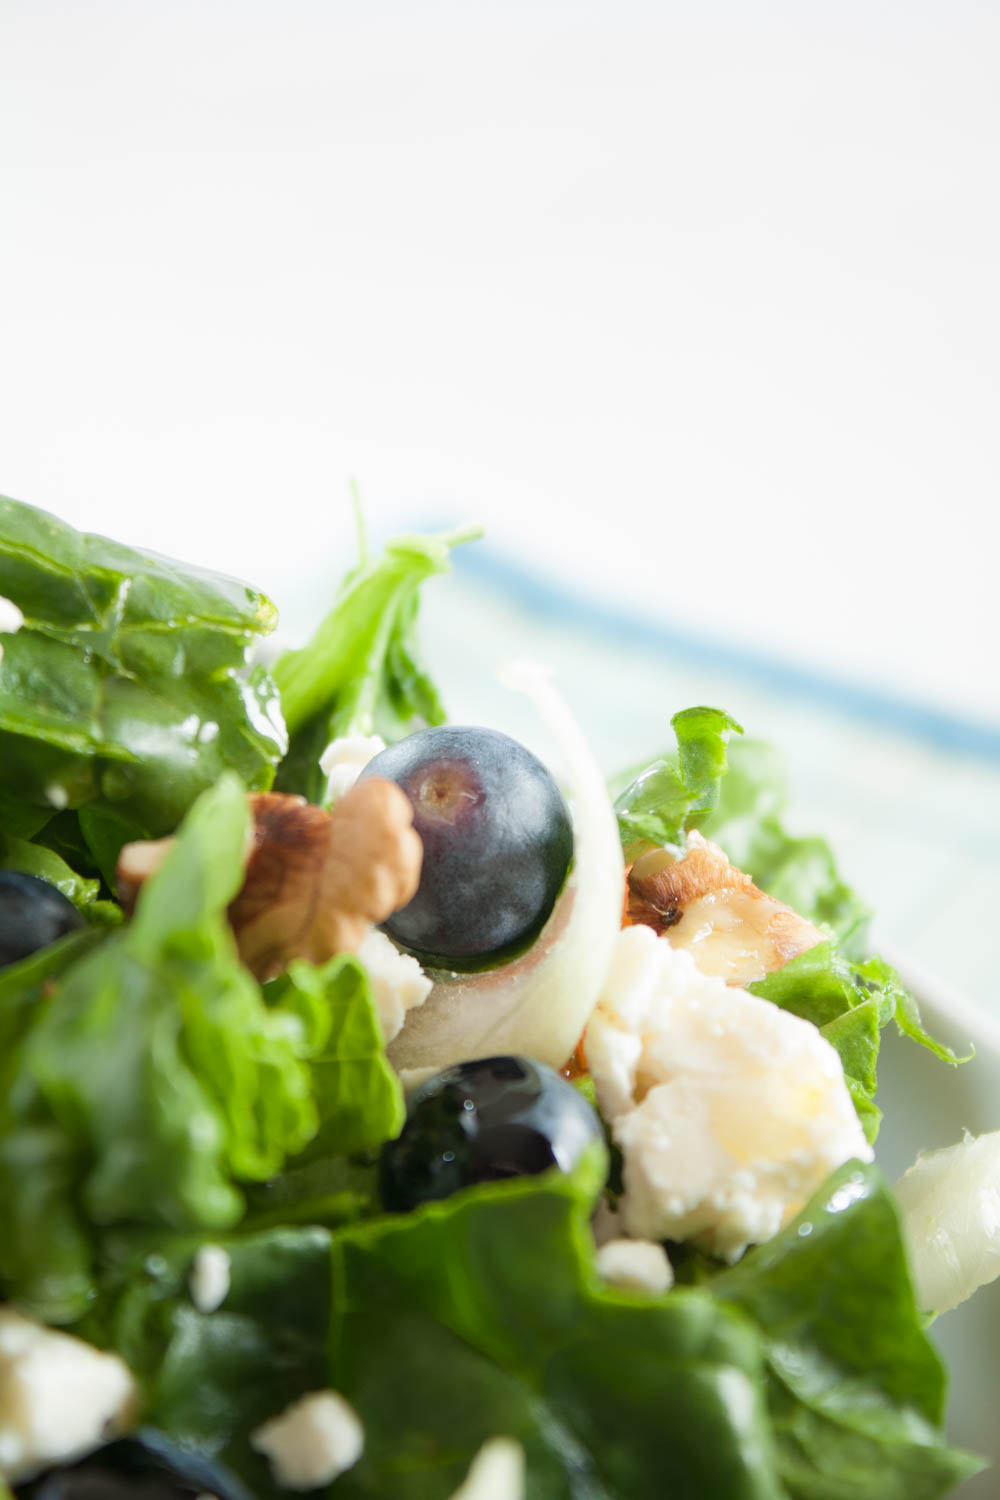 Leckerer Spinat Salat mit Walnüsen und Heidelbeeren. Dieser fruchtige Salat ist schnell gemacht und ist eine willkommene Salat Rezept Abwechslung!